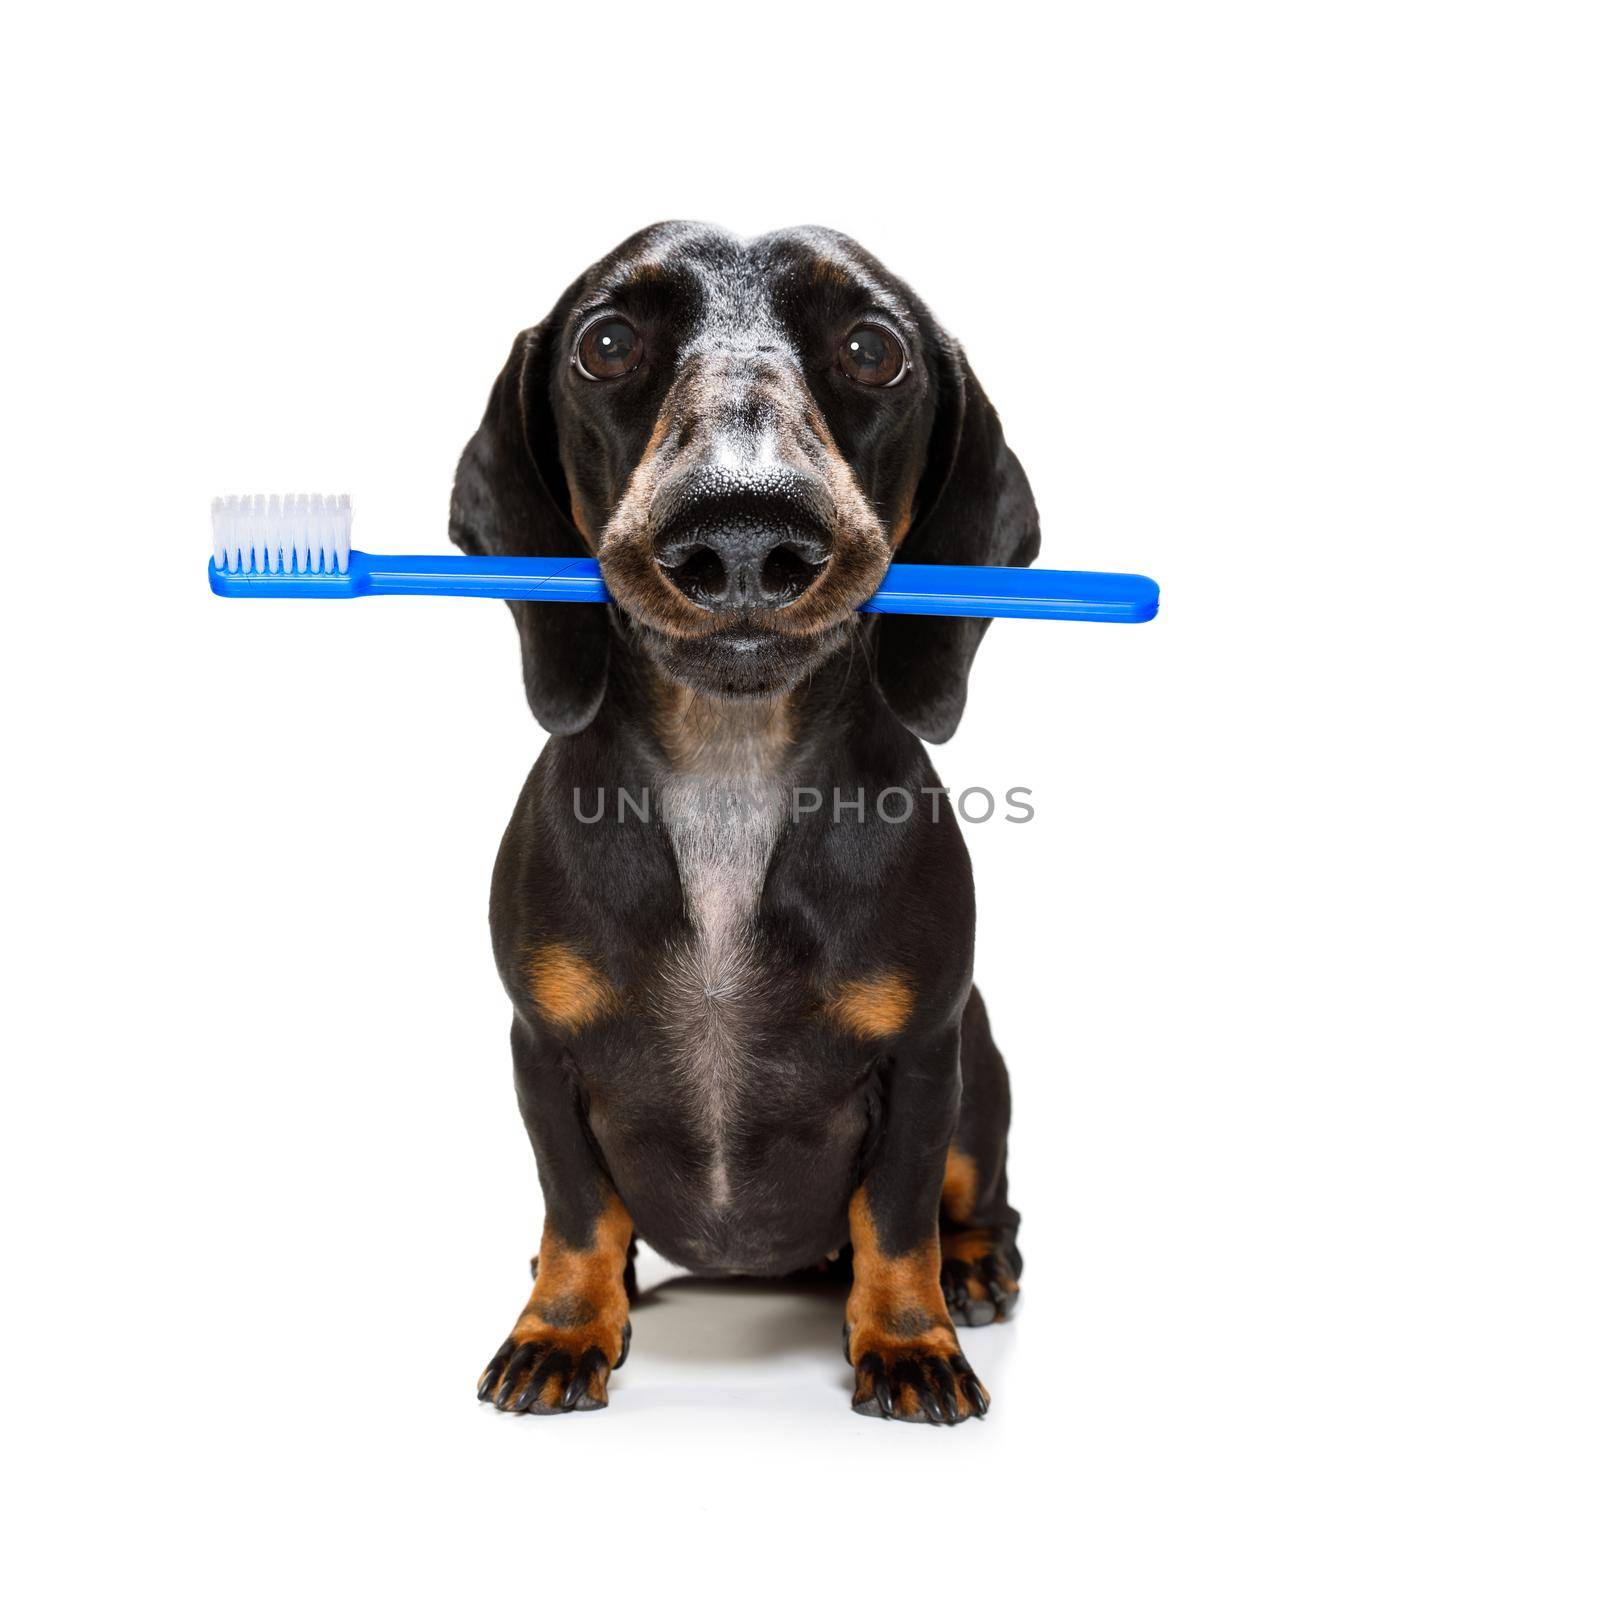 dental toothbrush dog by Brosch